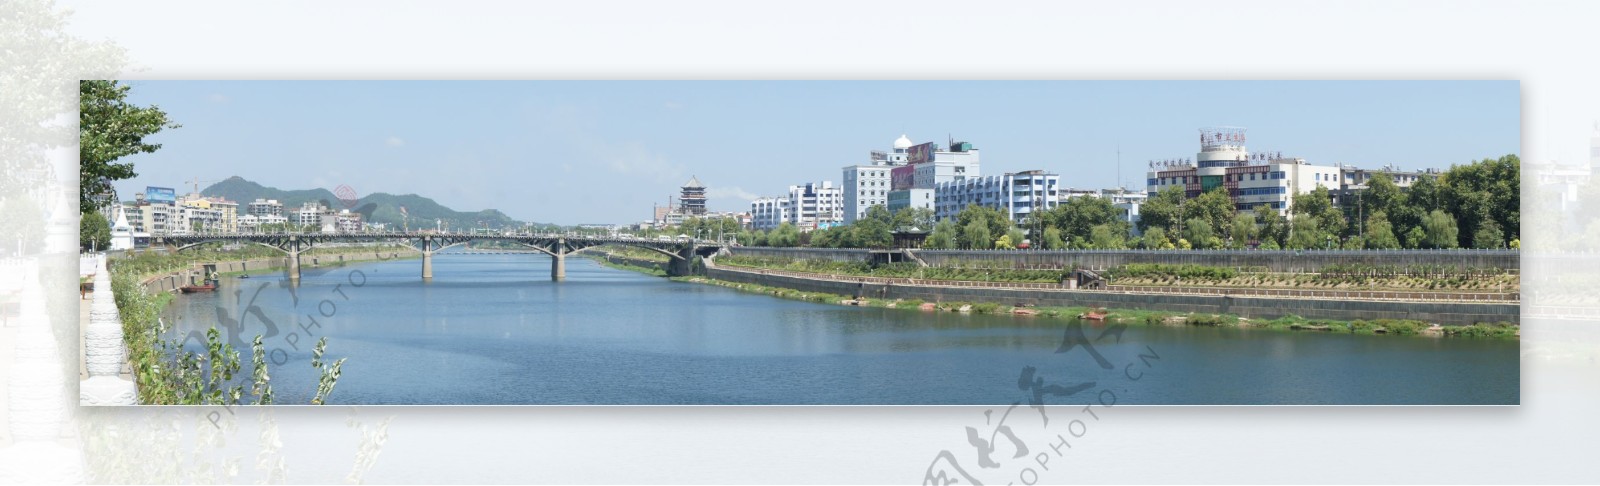 景德镇昌江河图片